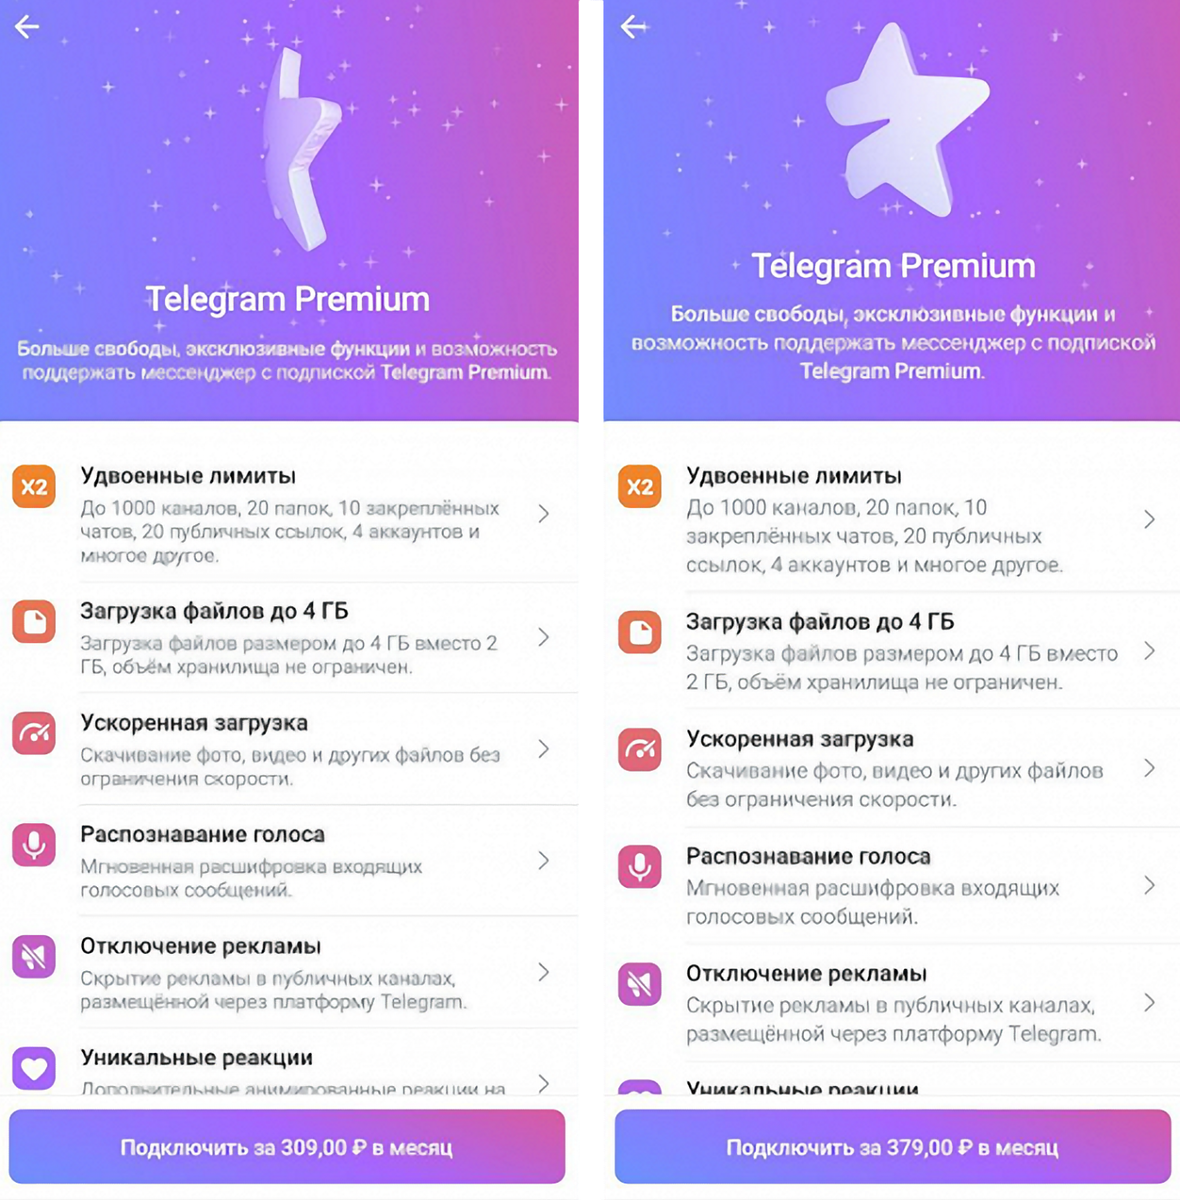 Телеграмму скачать бесплатно на андроиде на русском языке фото 71